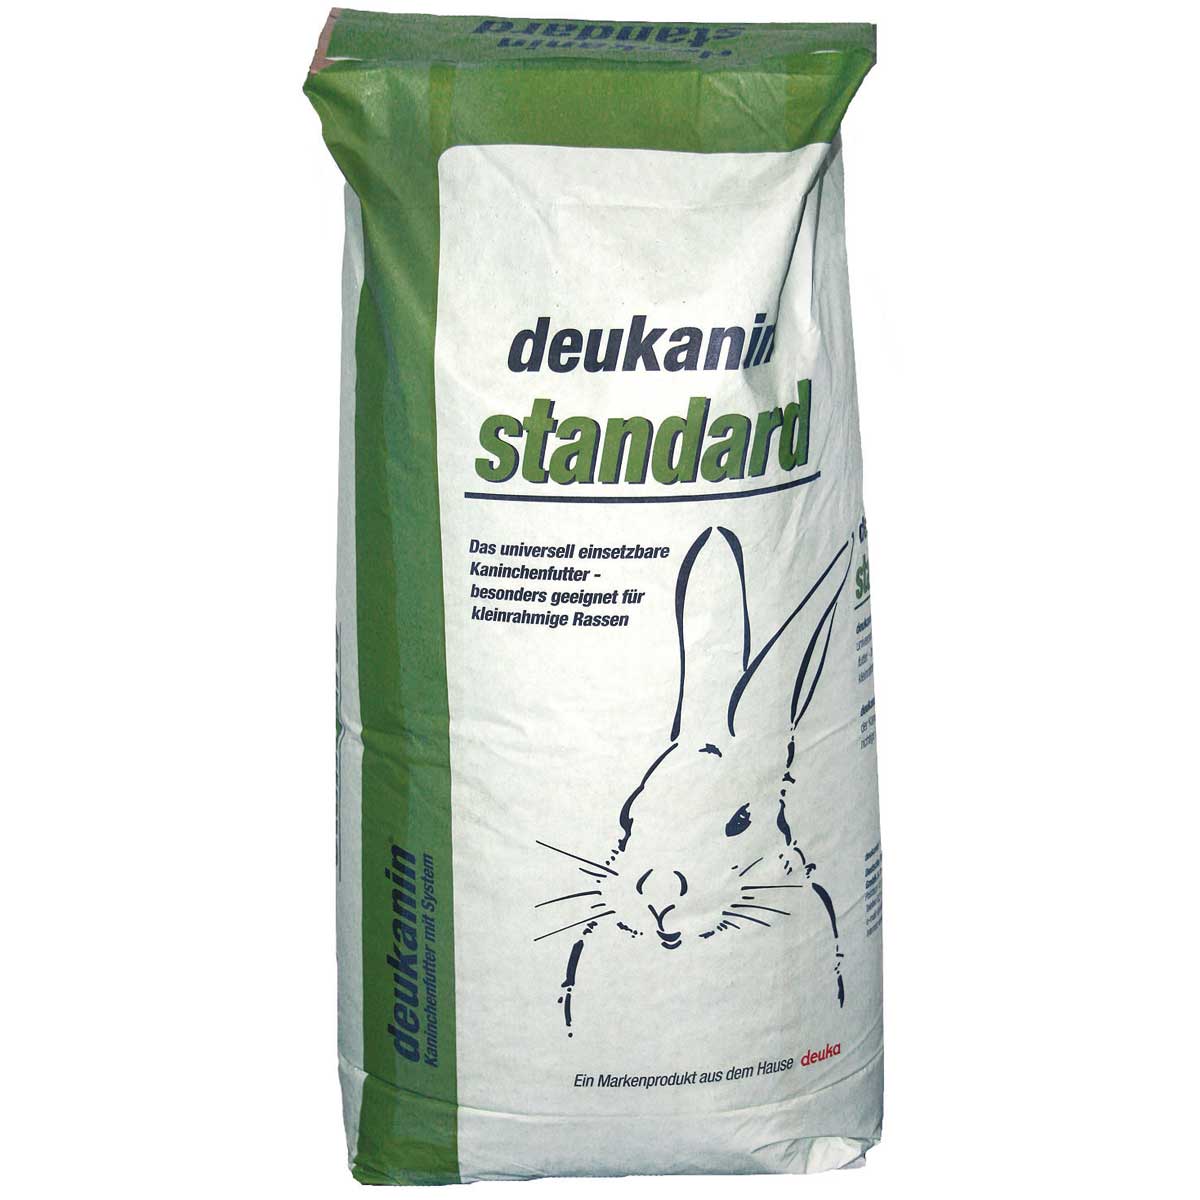 Deukanin standard kaninfoderpellets 25 kg